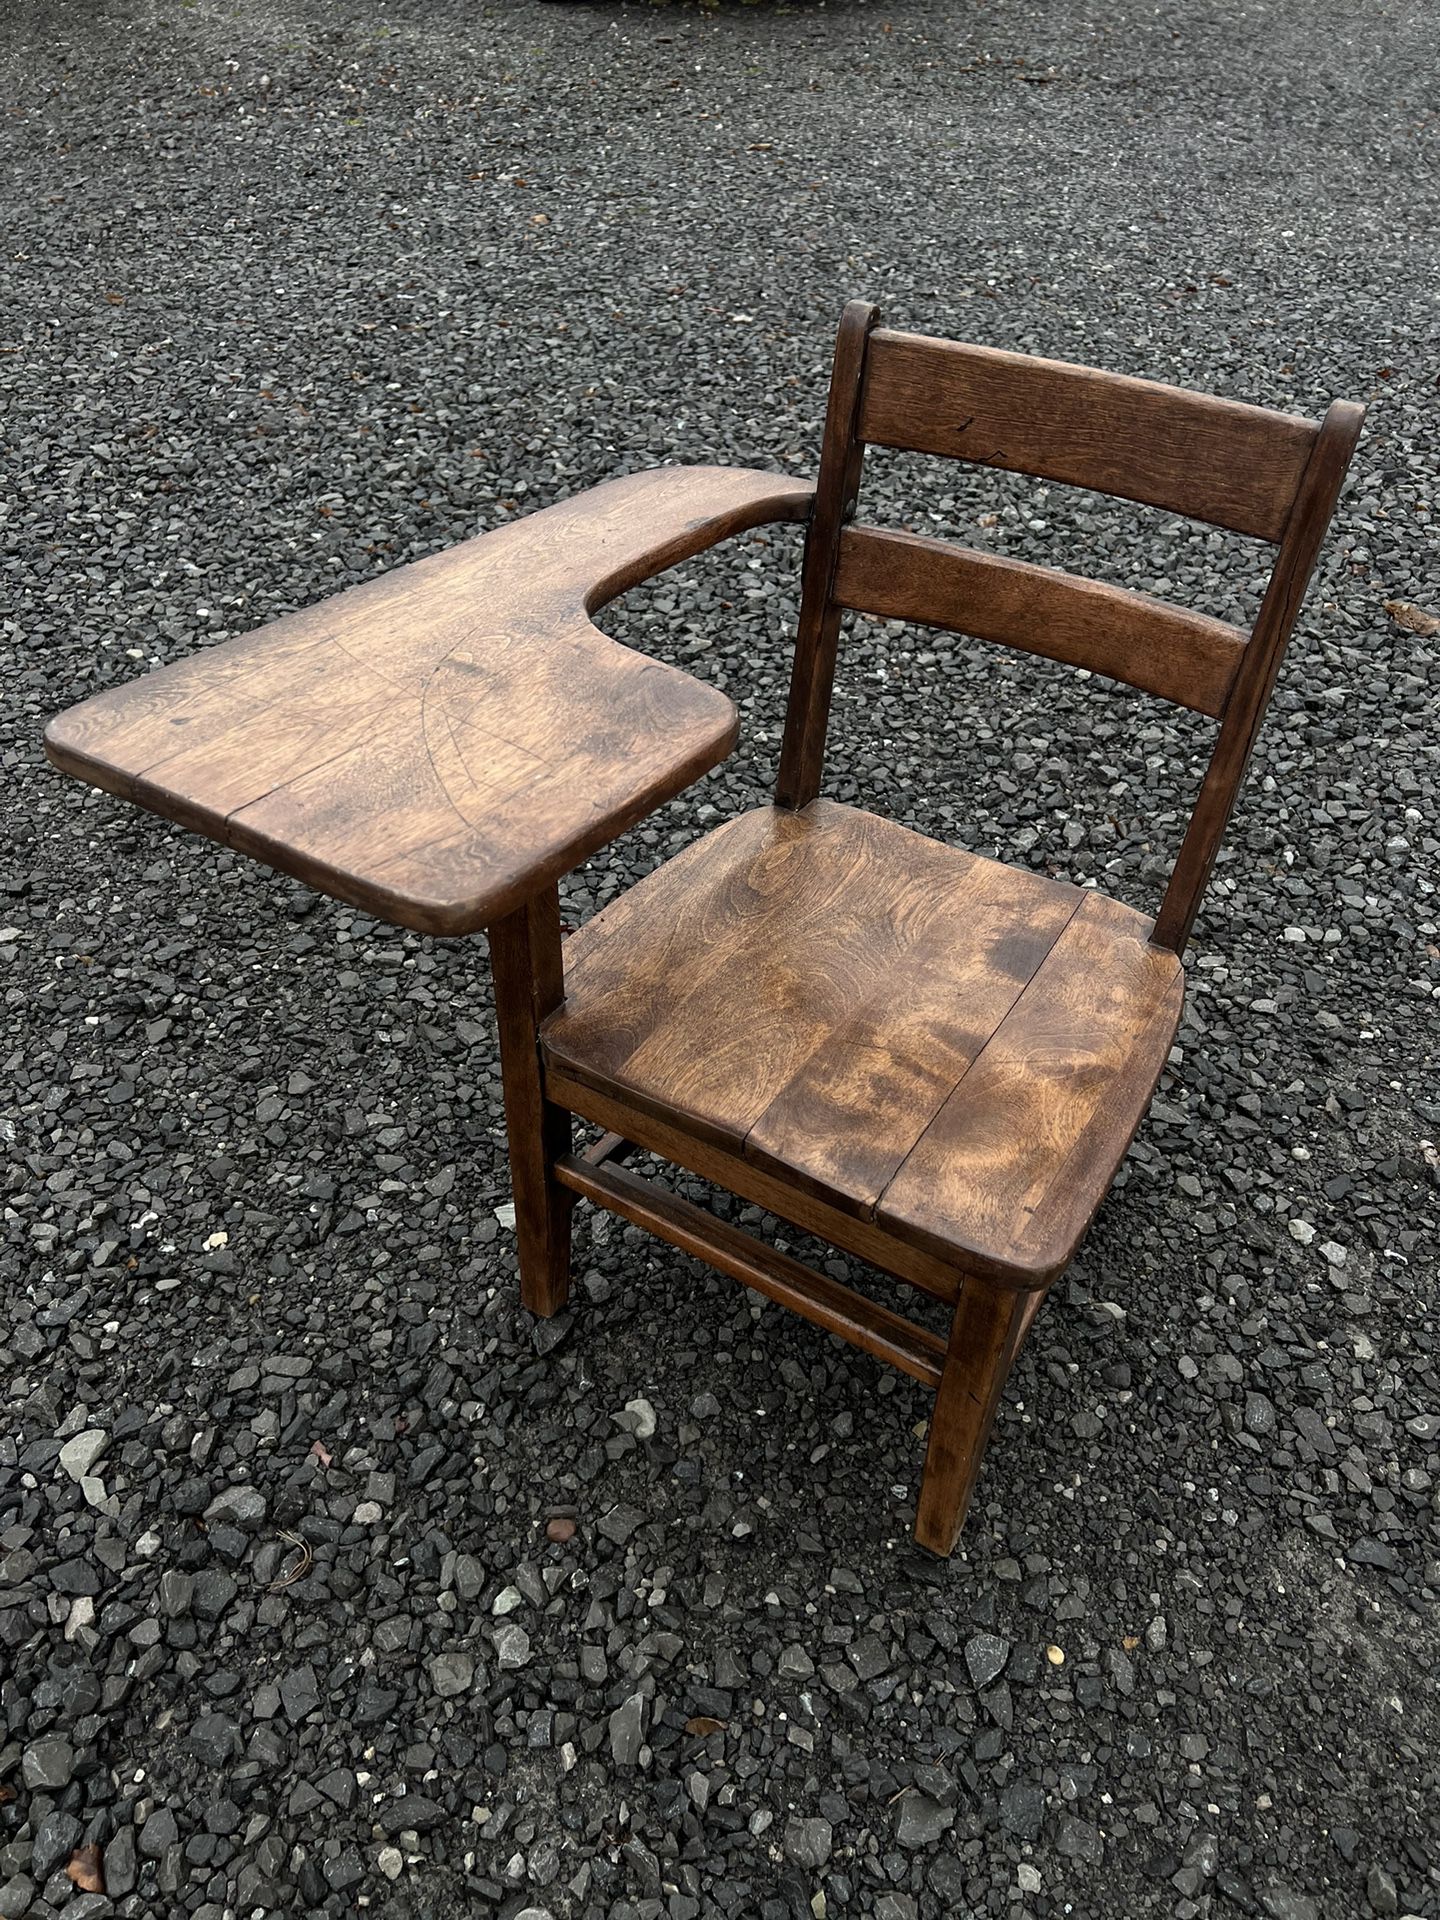 Vintage Wooden Children’s School Desk And Chair